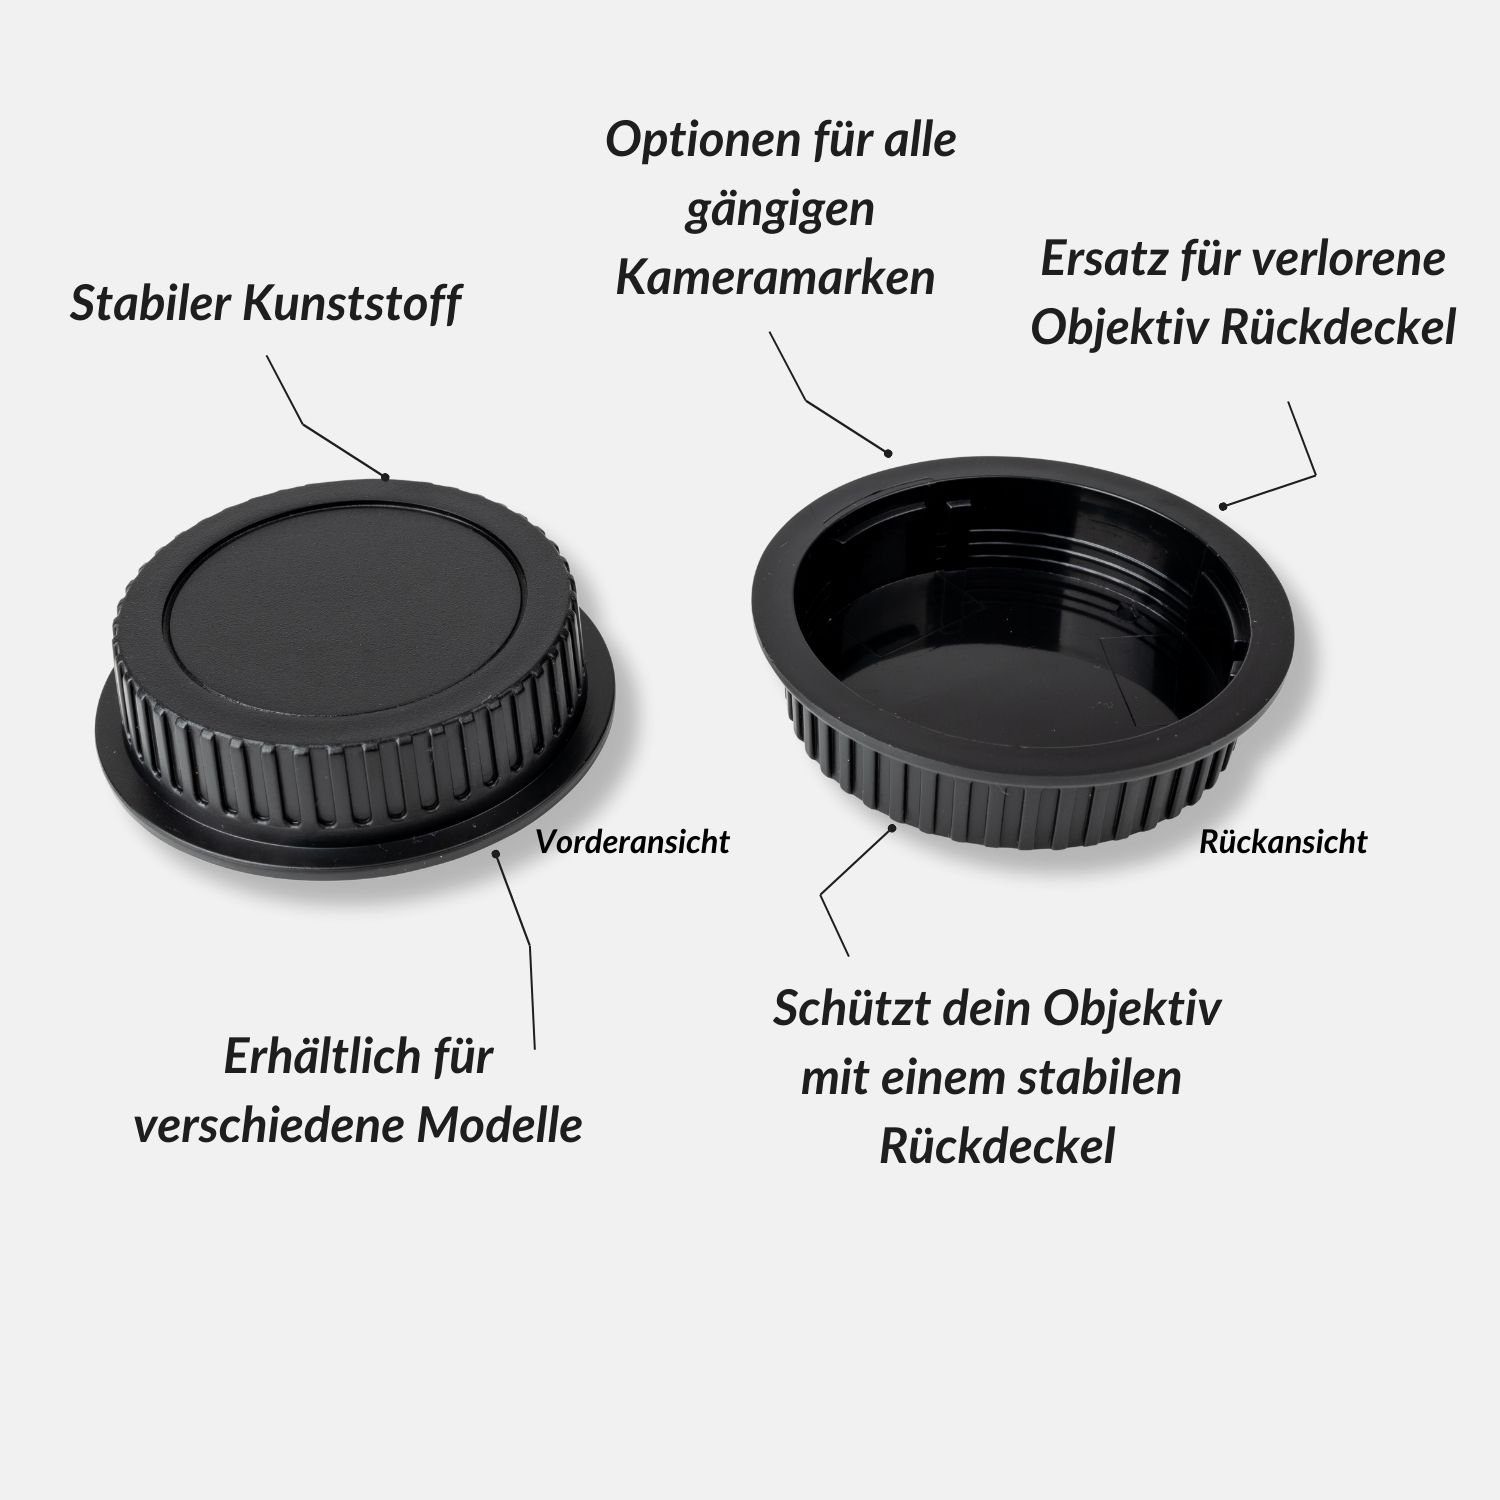 Thirds Micro Lens-Aid Objektivrückdeckel (MFT) Four Objektivrückdeckel für